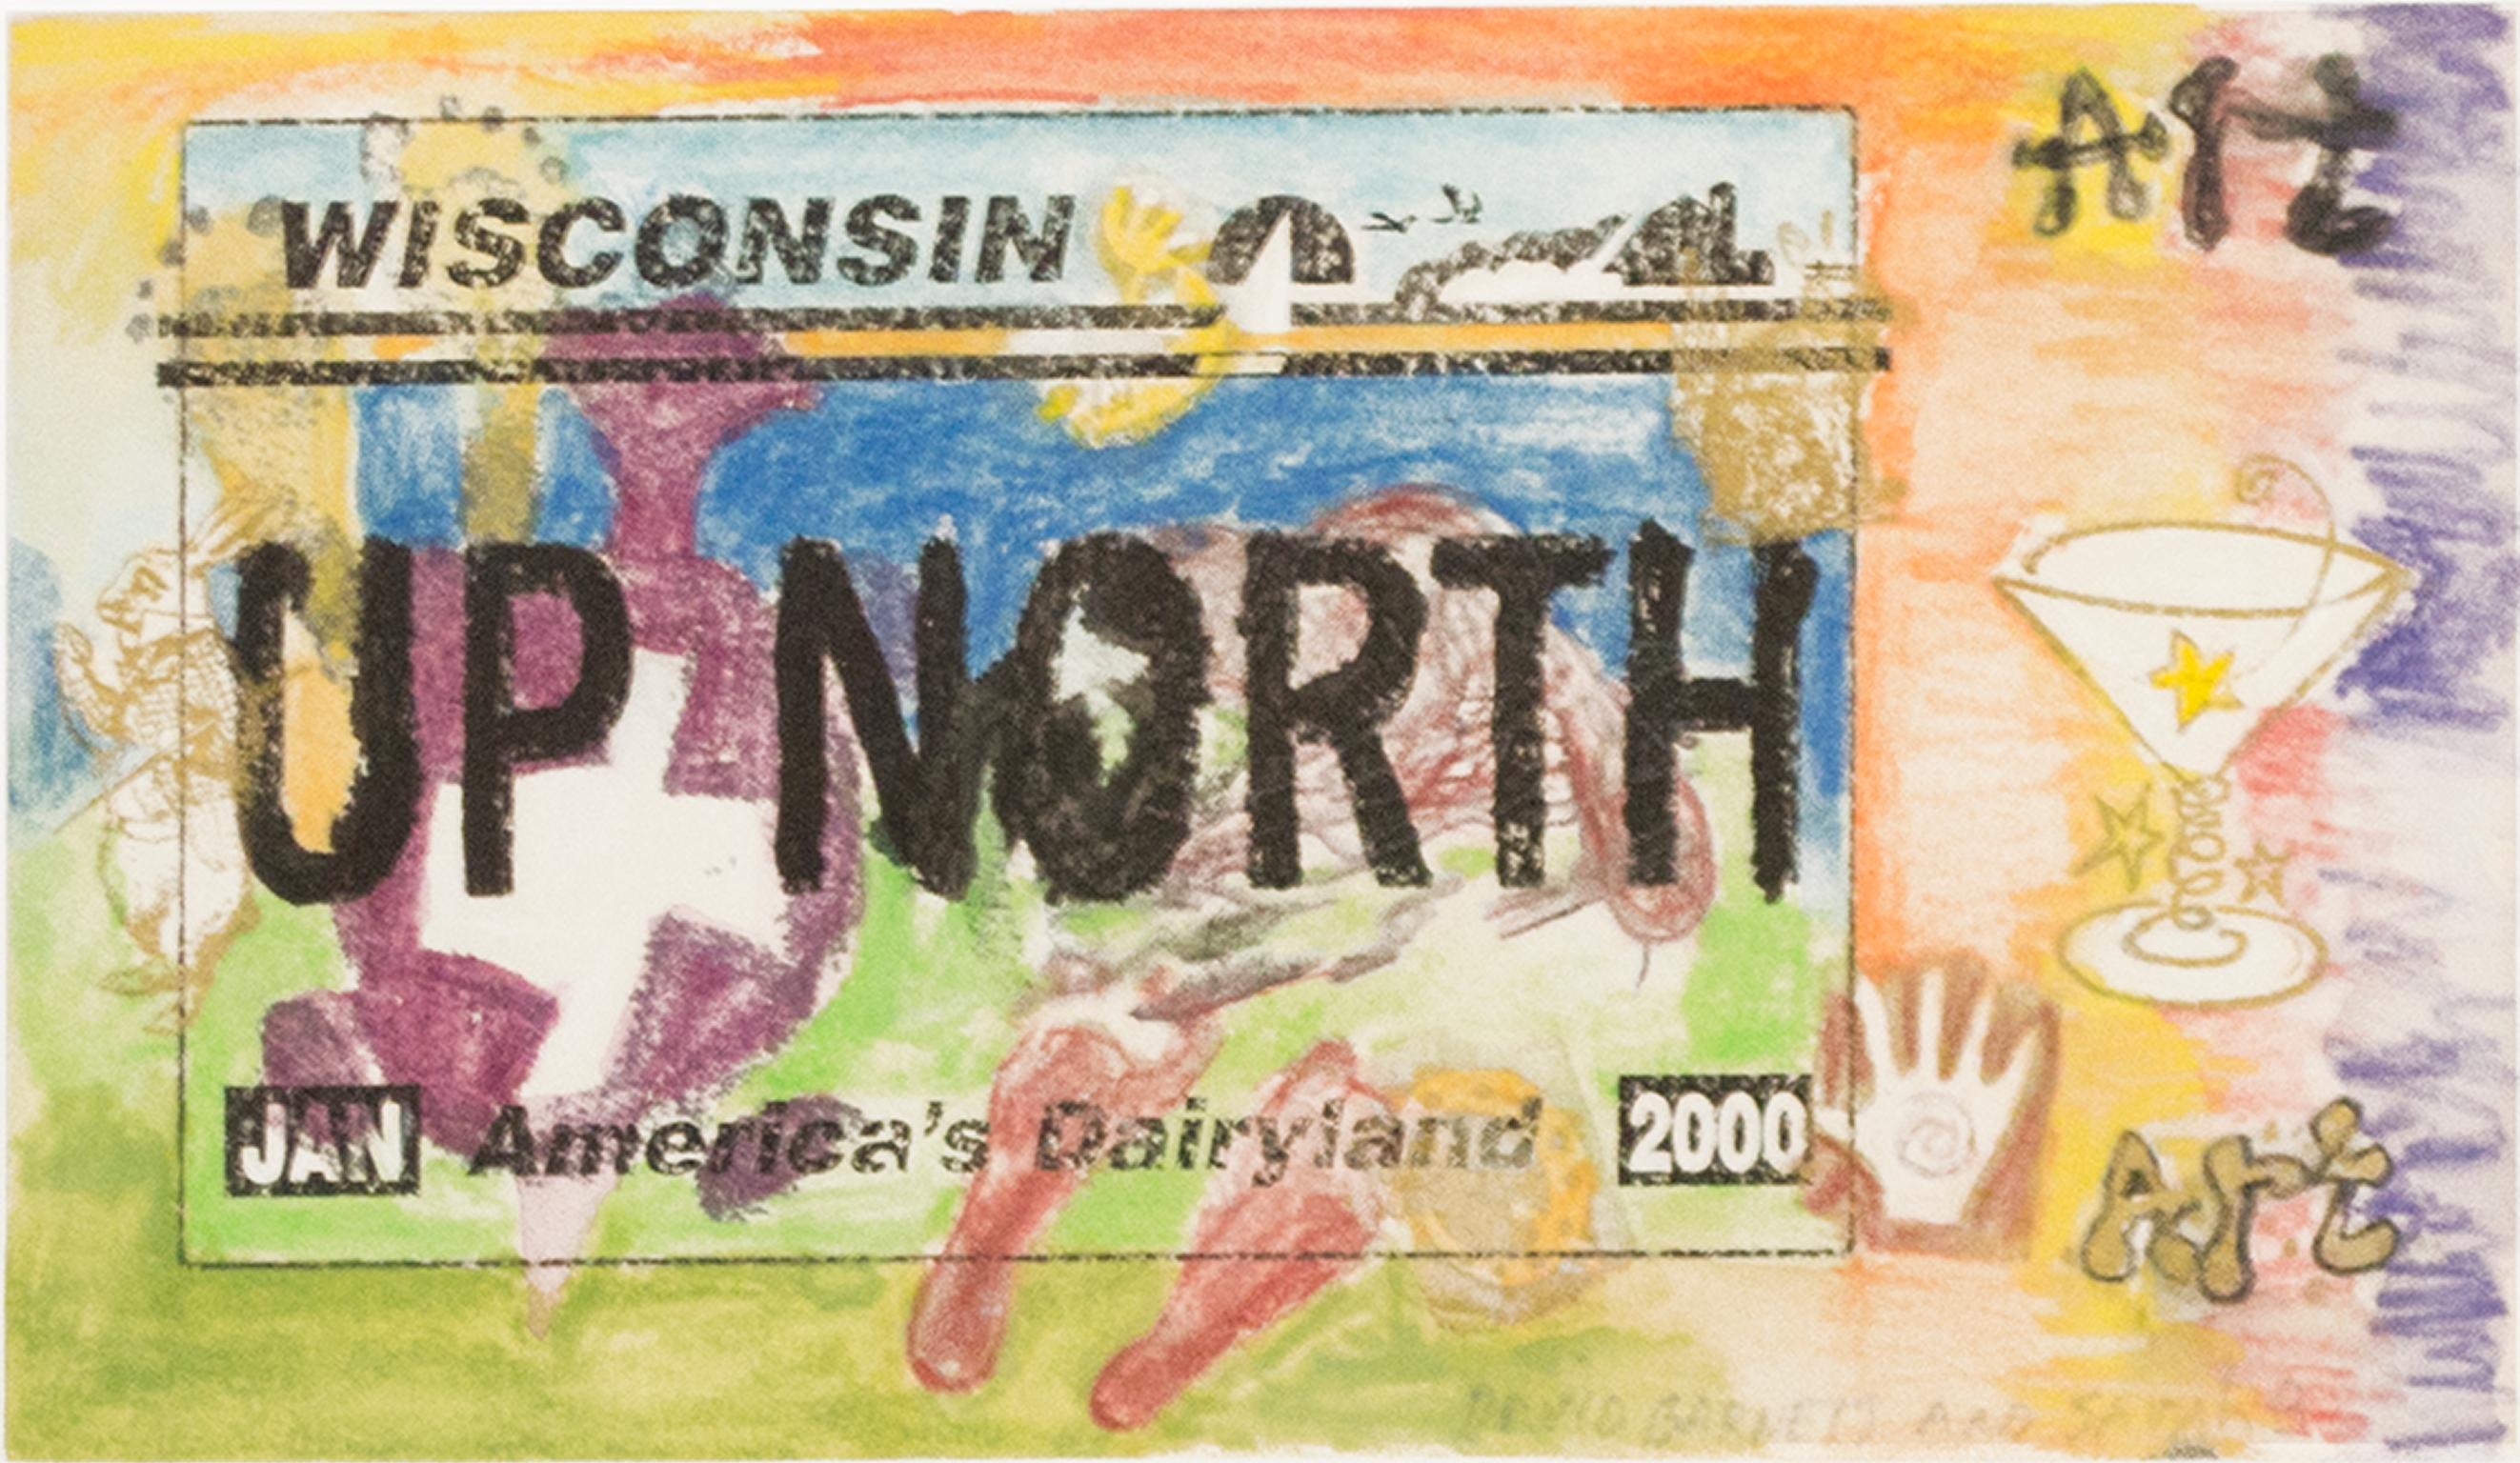 Abstract Drawing David Barnett - « Up North Wisconsin: Morph Dog, Rabbit, & Beaver », par David & Sarah Barnett